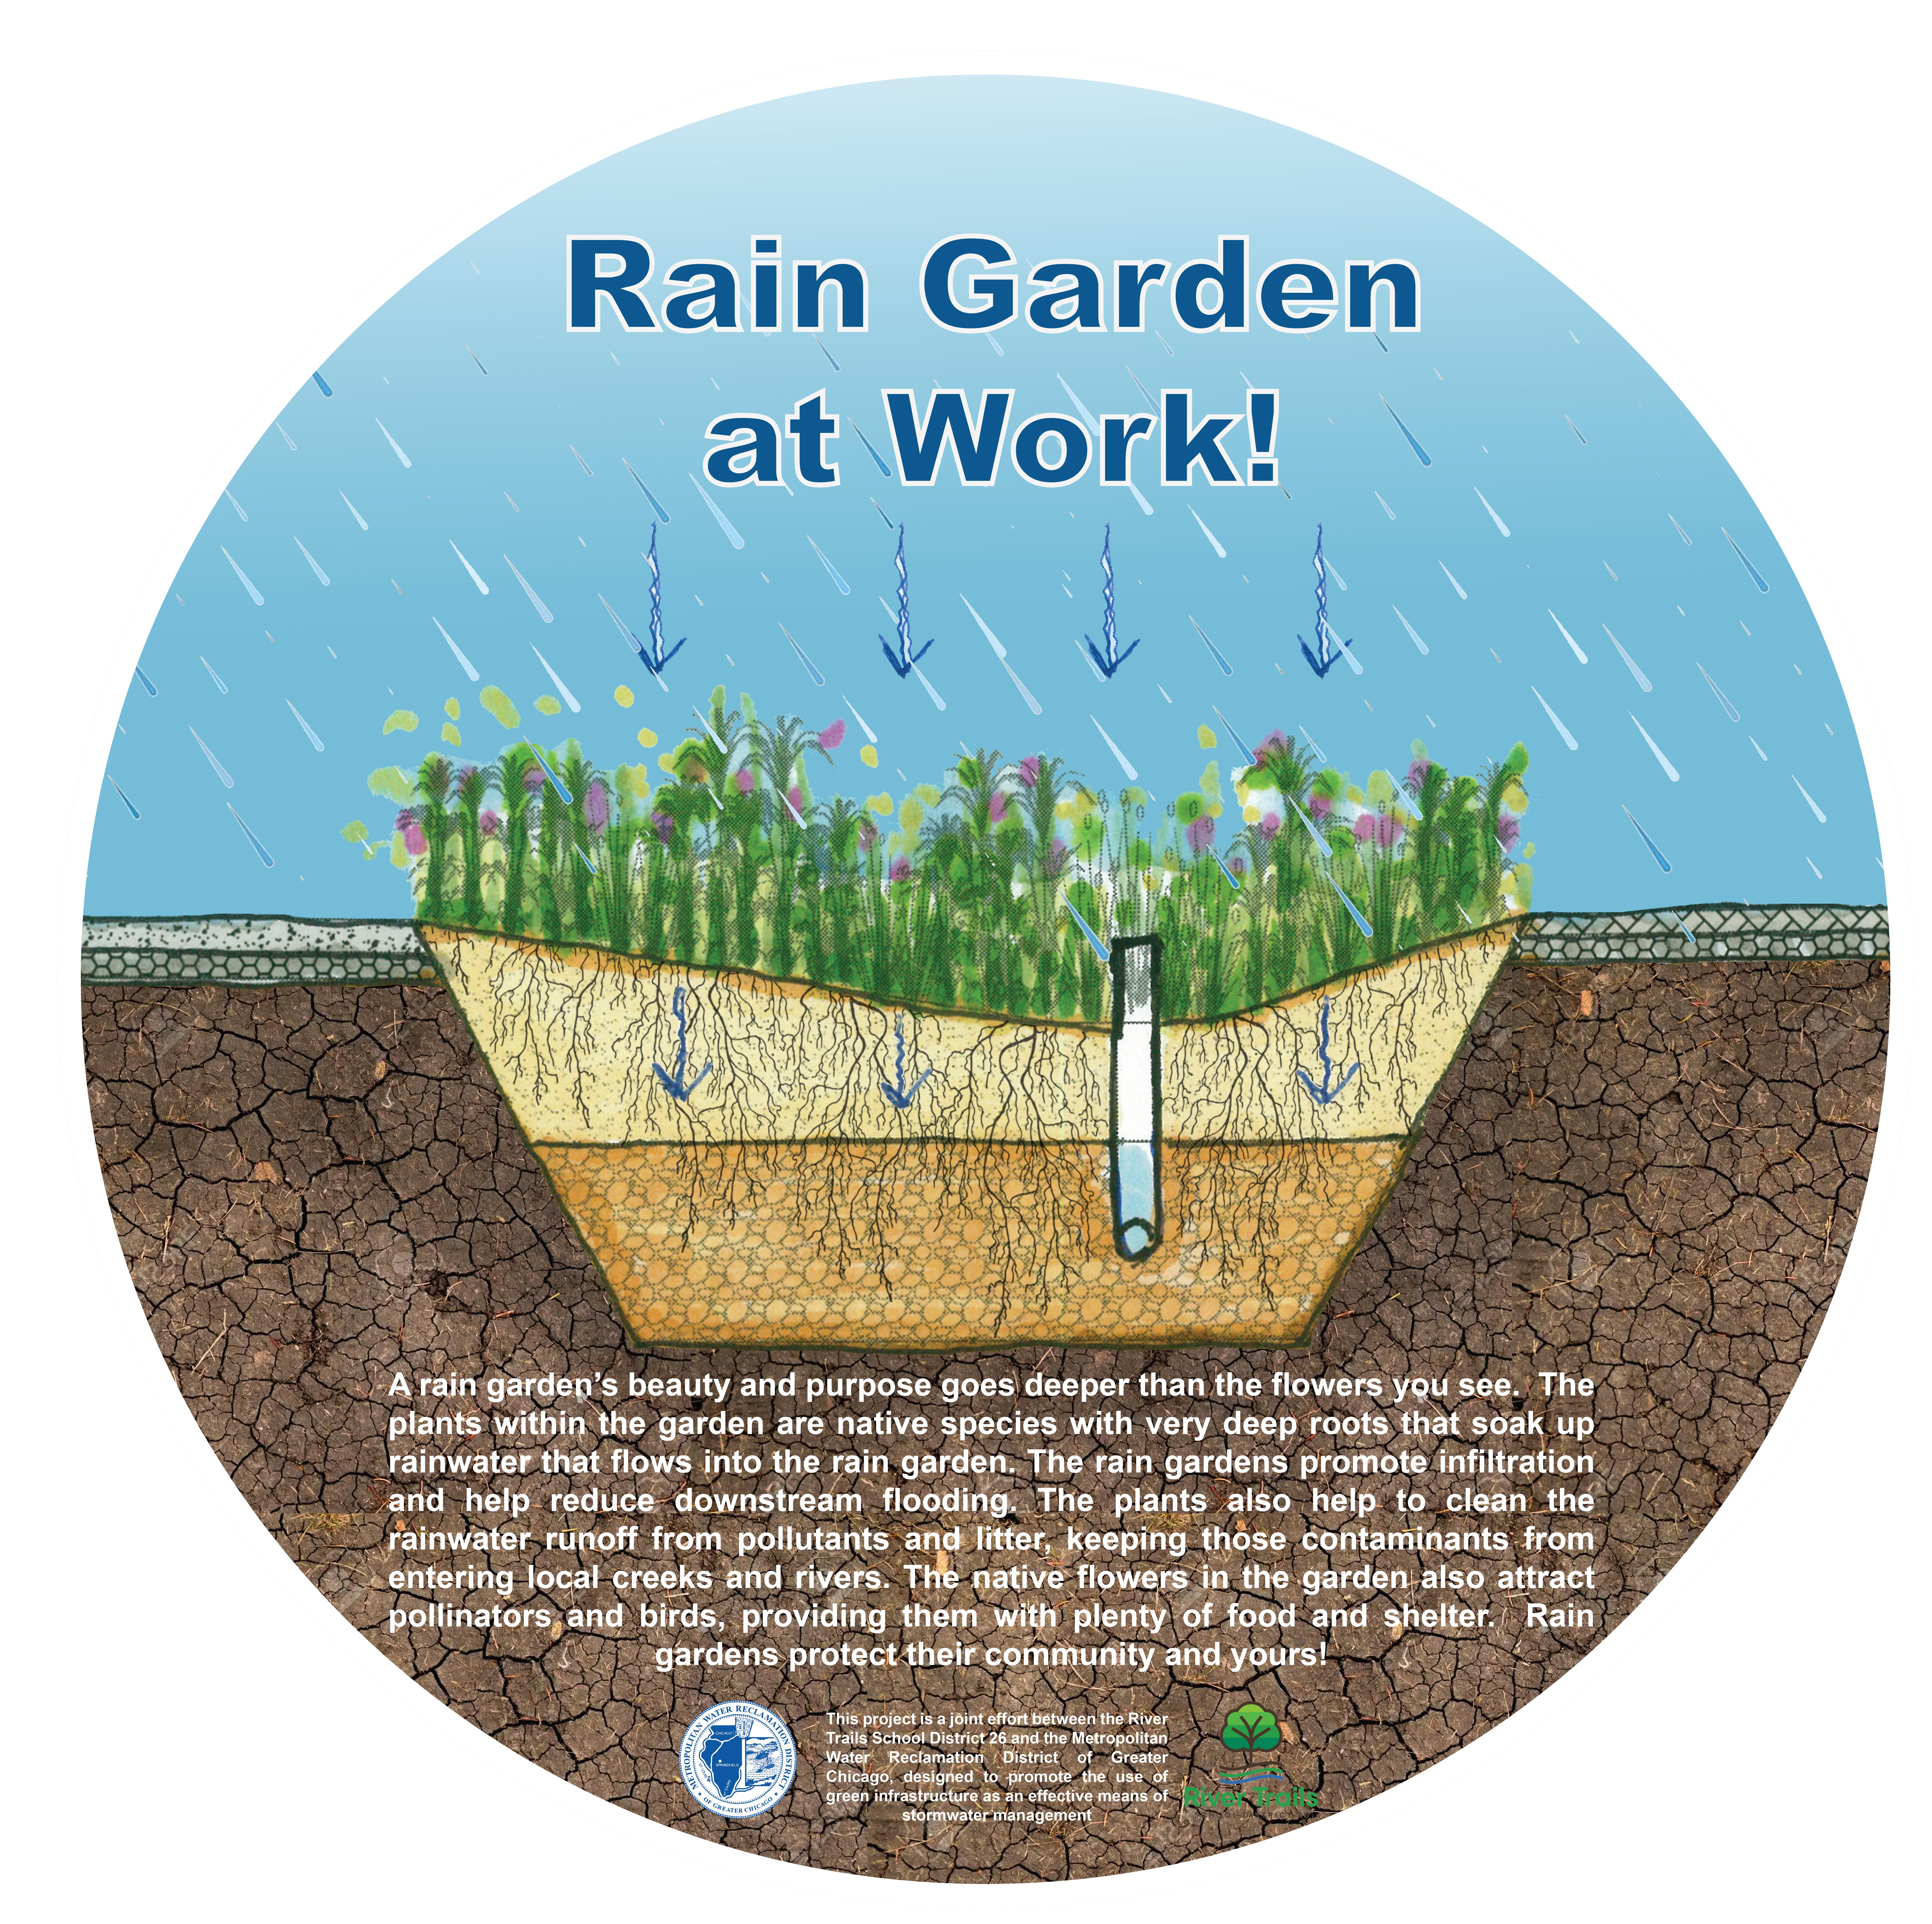 Rain garden diagram and description